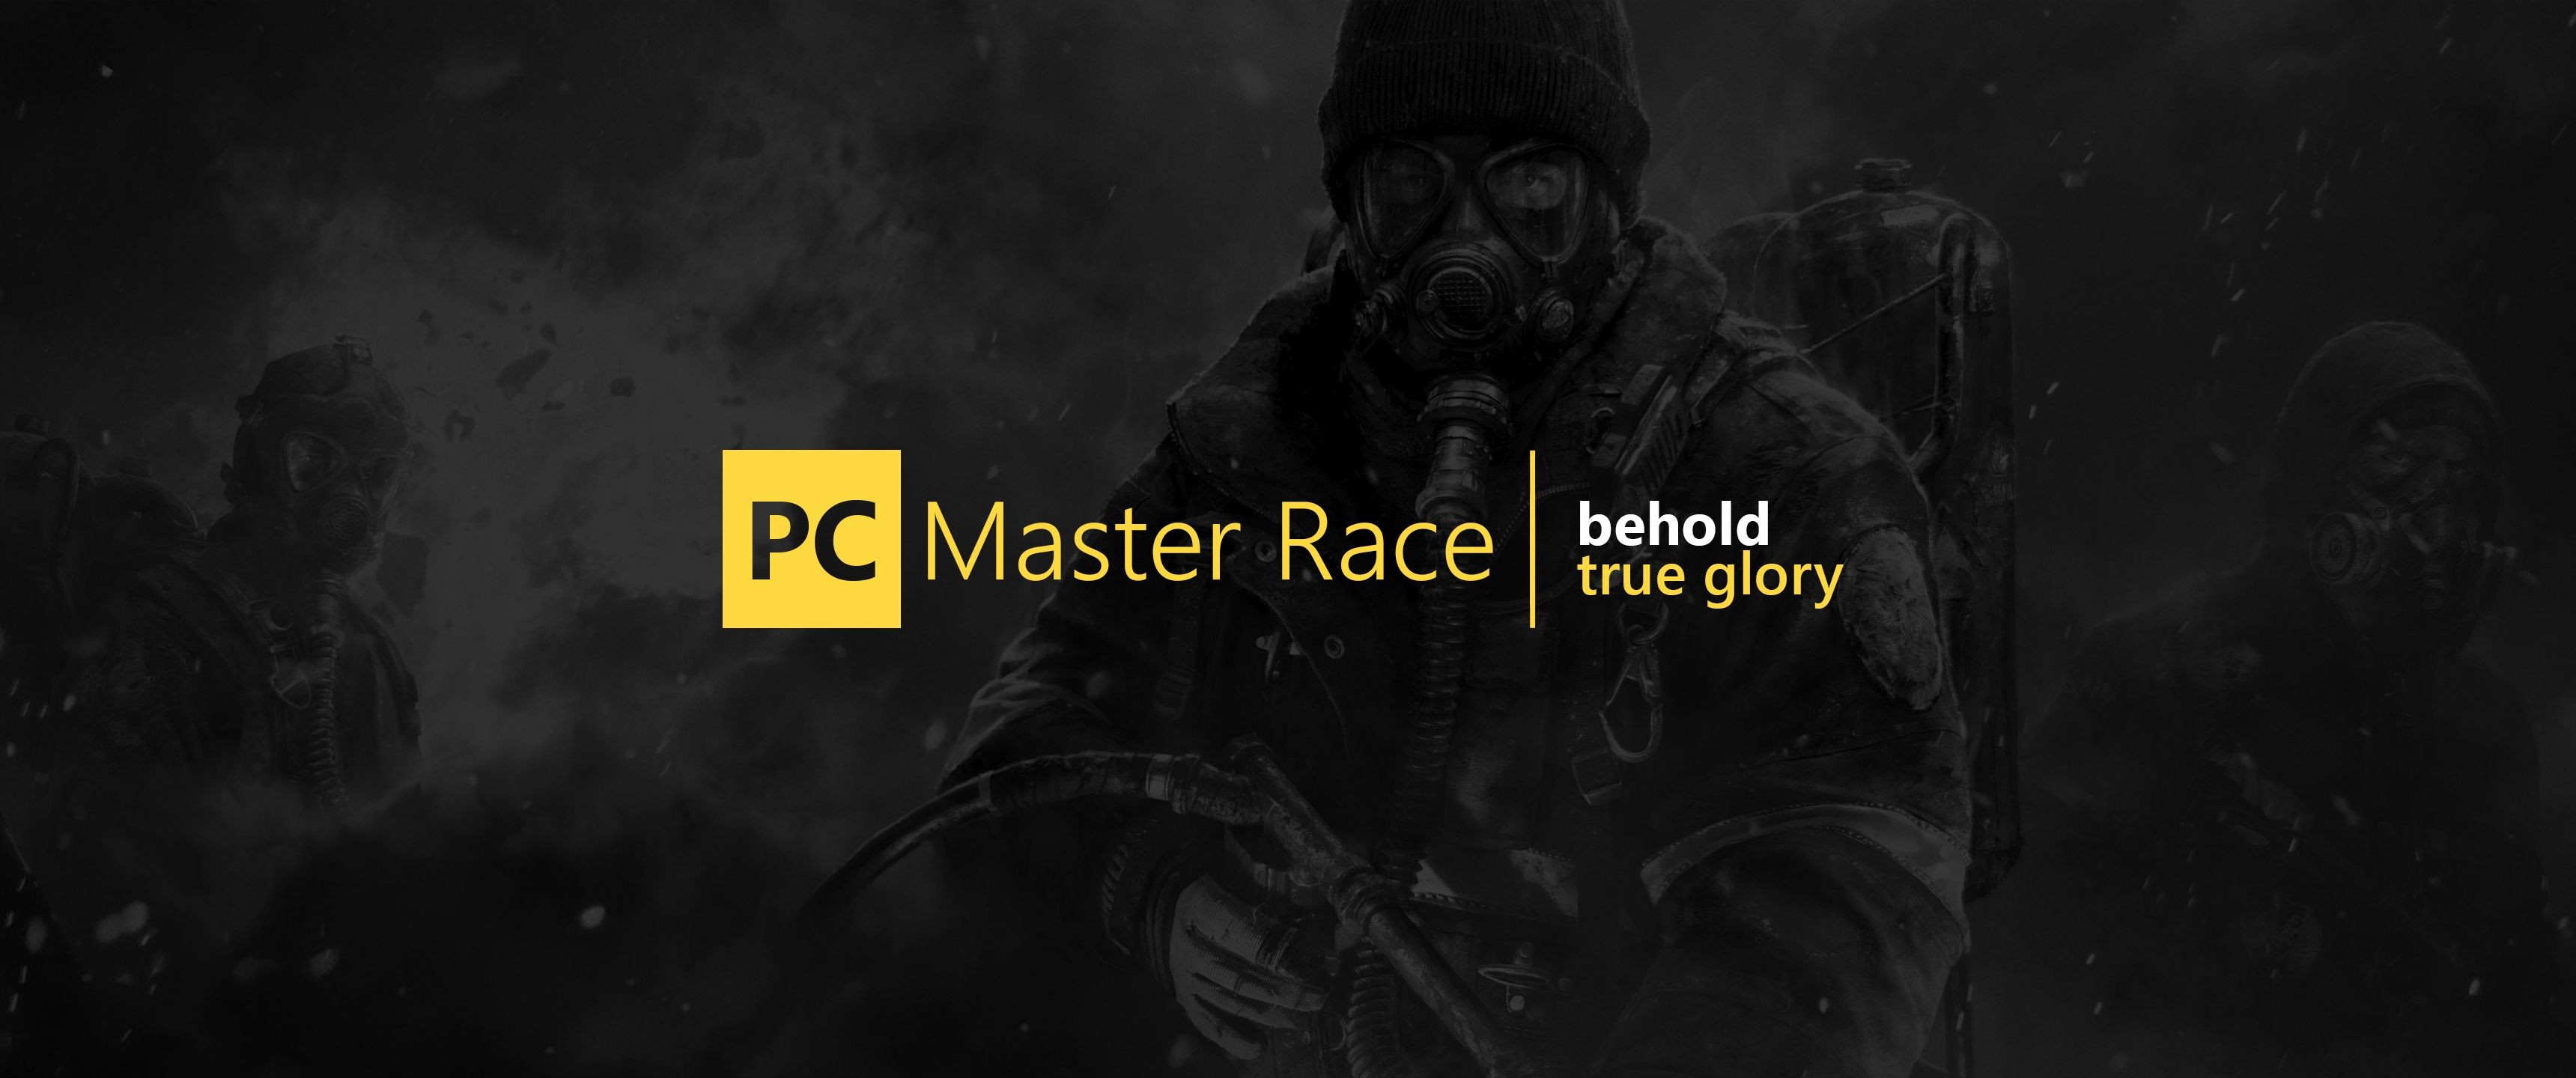 General 3440x1440 PC gaming PC Master  Race logo